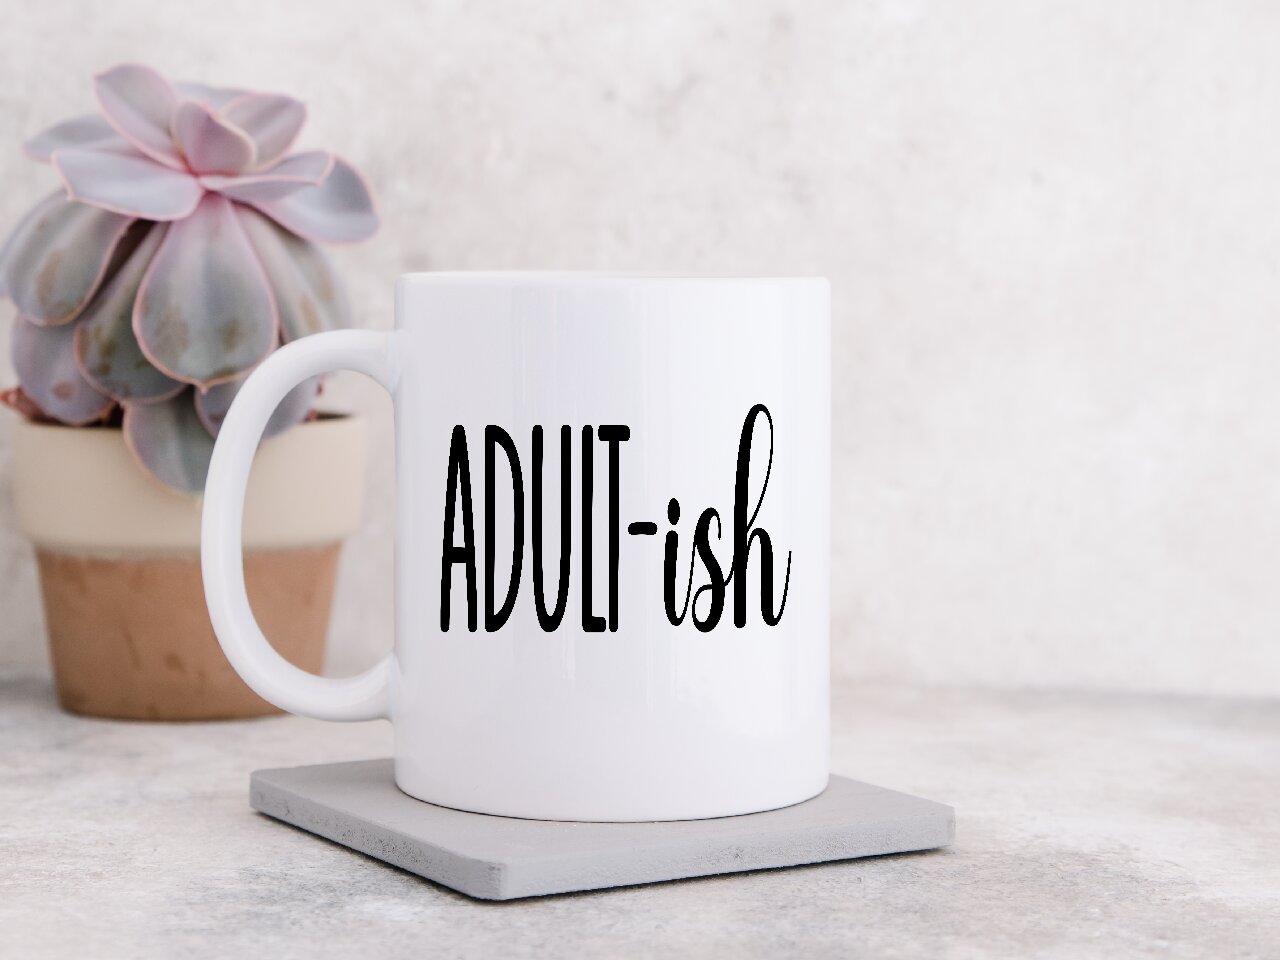 Adult-ish- Coffee Mug